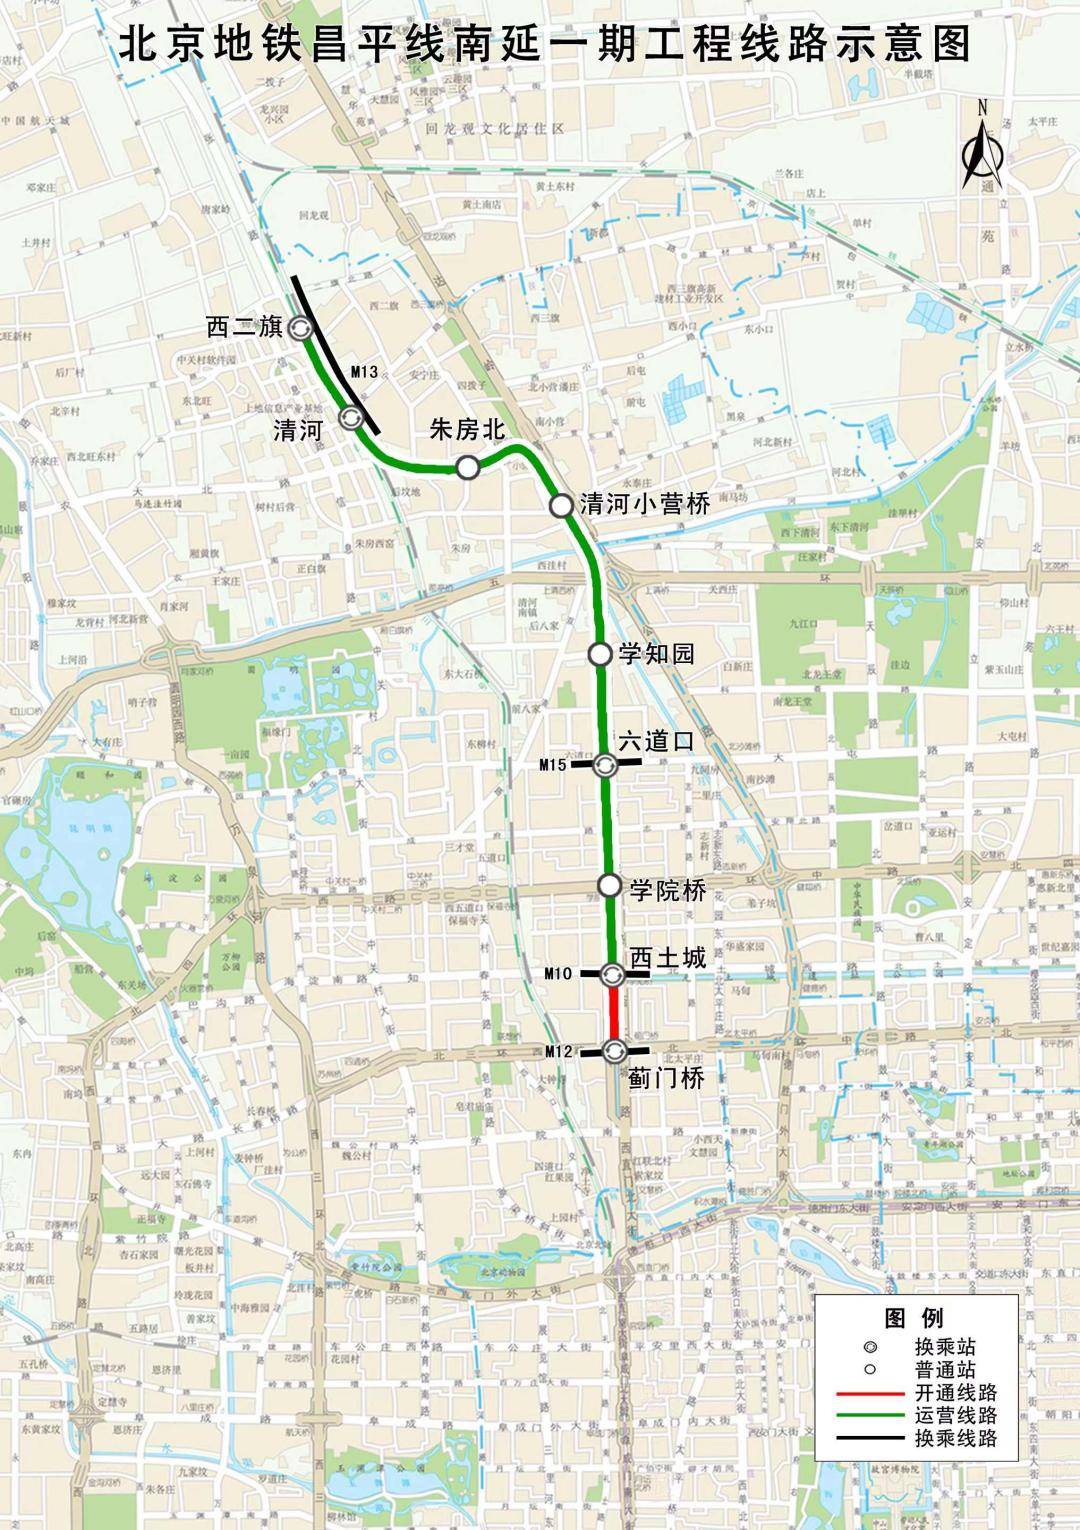 通州地铁m101线一期将全面开工!今年北京地铁建设计划发布!